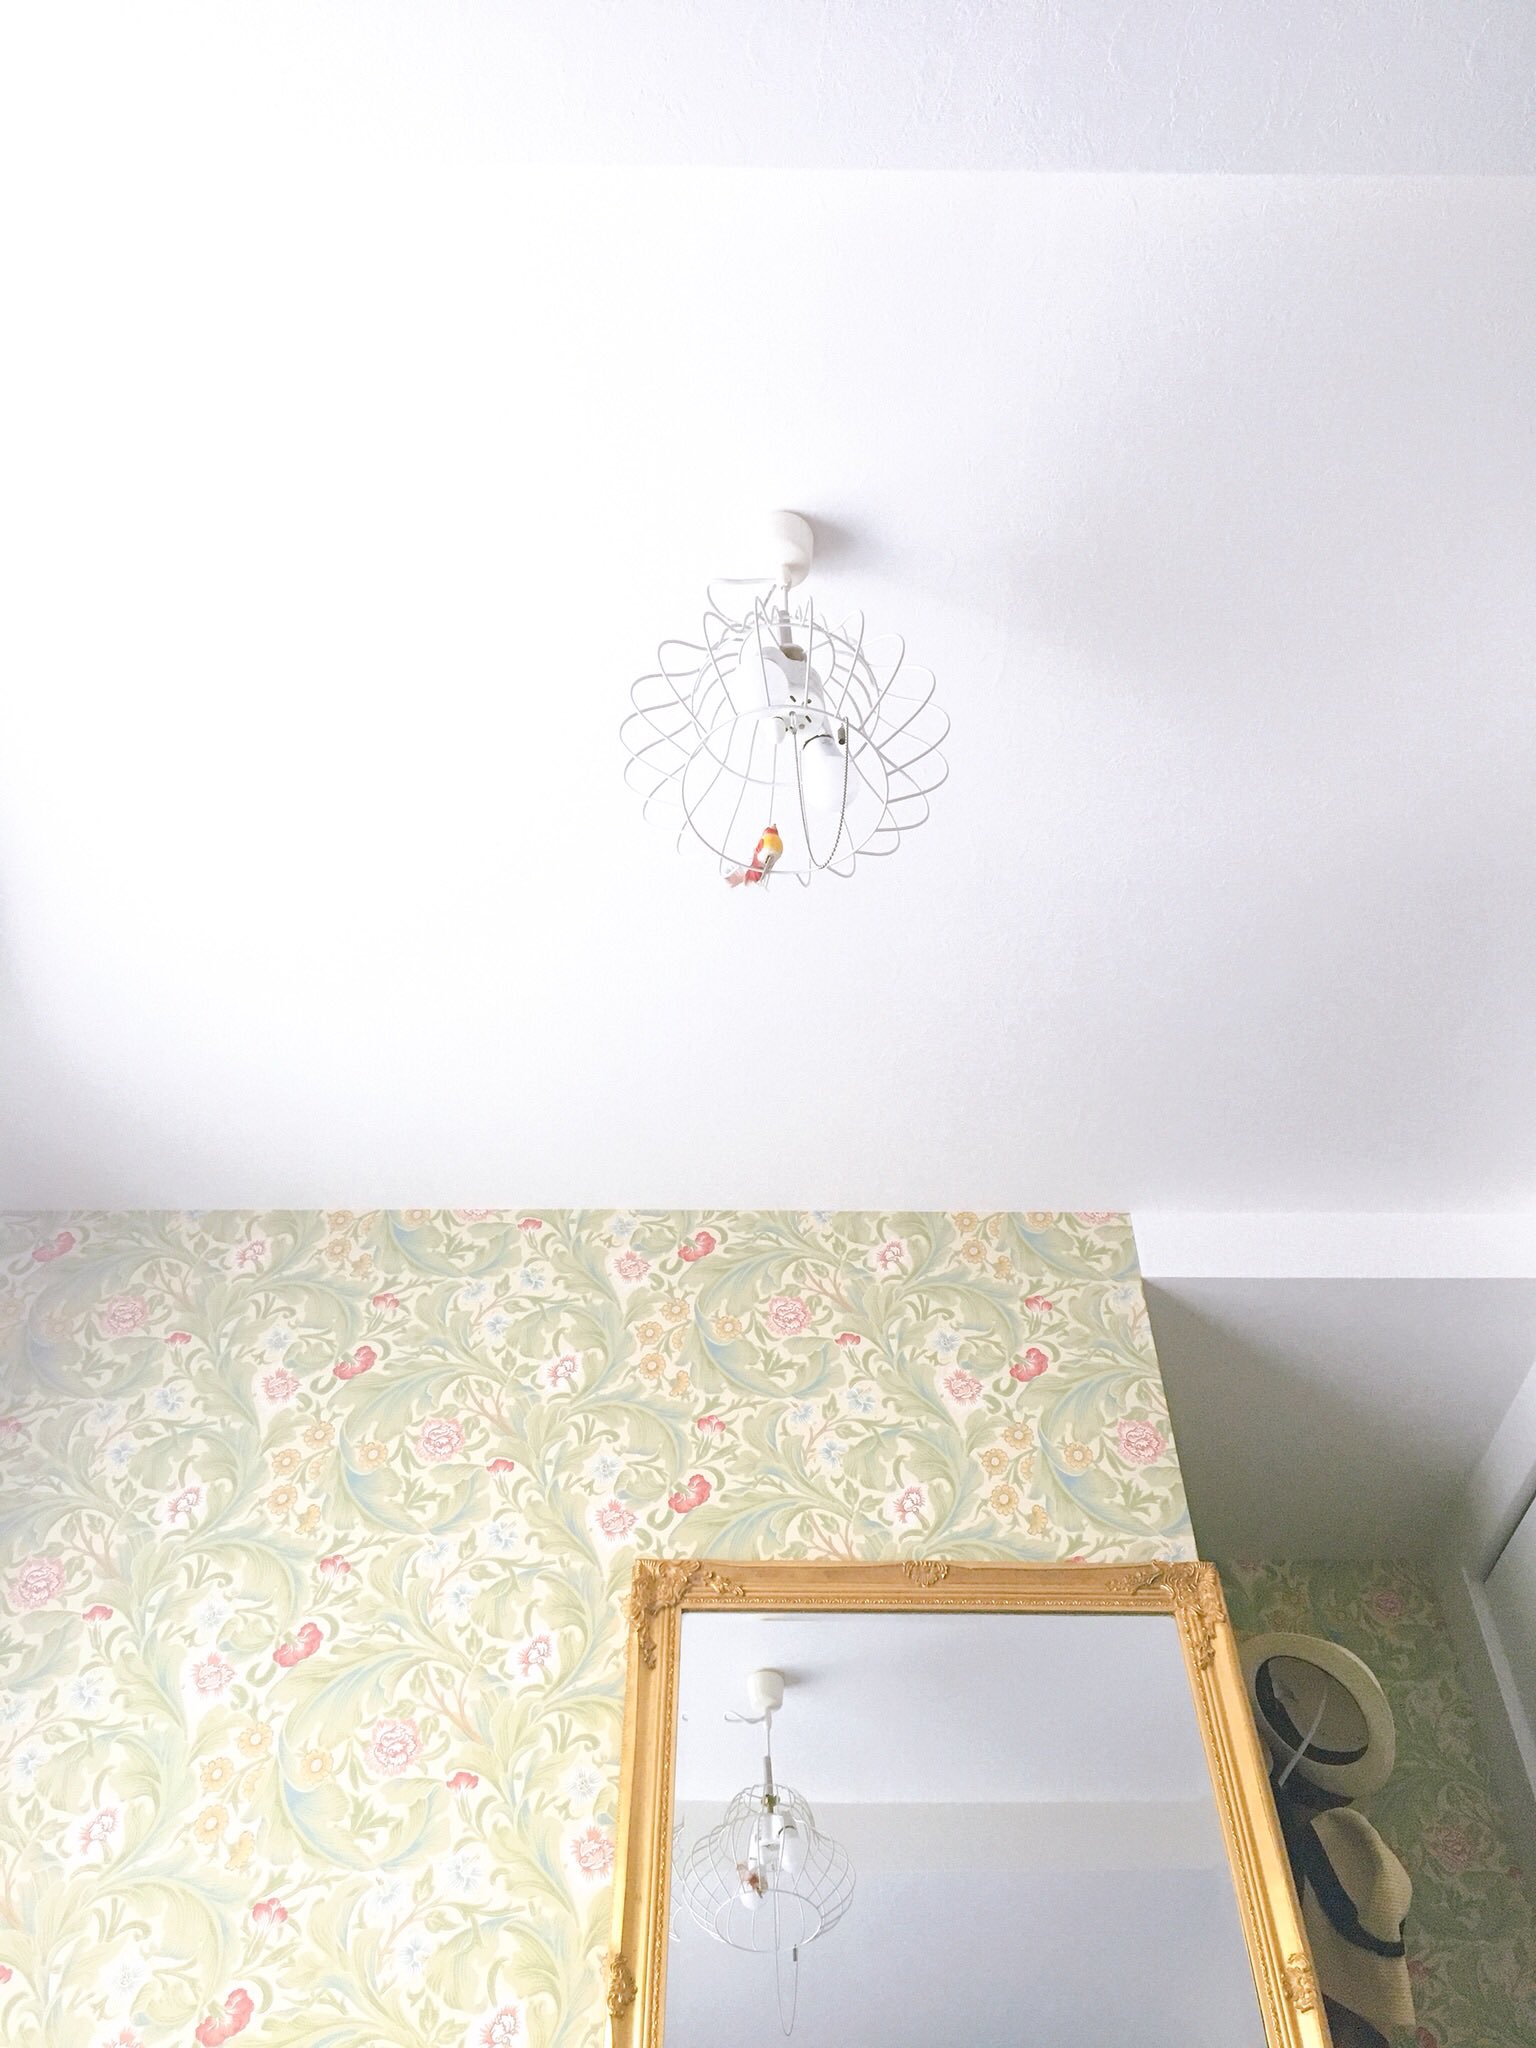 ガーリエンヌ イケてる壁紙のお部屋がどんどん増えてくれたら これ以上嬉しいことはない ちなみにわが家は ダイニングが青 ここはペンキ塗り 洋室がウィリアム モリスの花柄 トイレがミントグリーンです